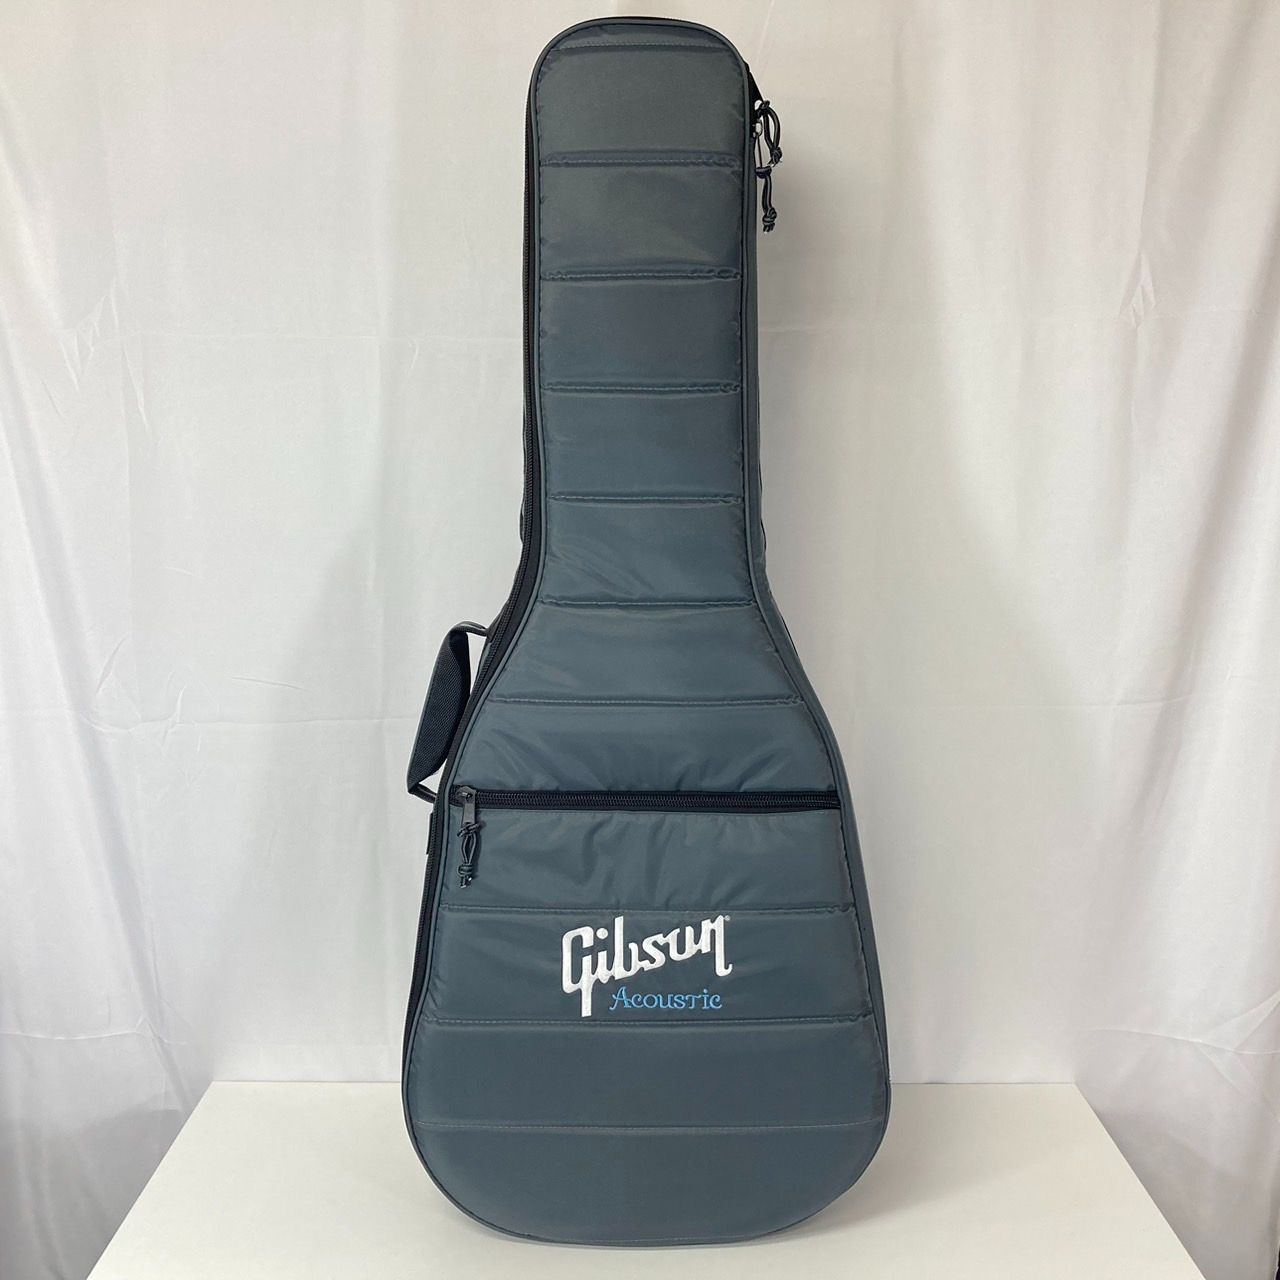 Gibson アコギ用セミハードケース(ギグバッグ) - 器材